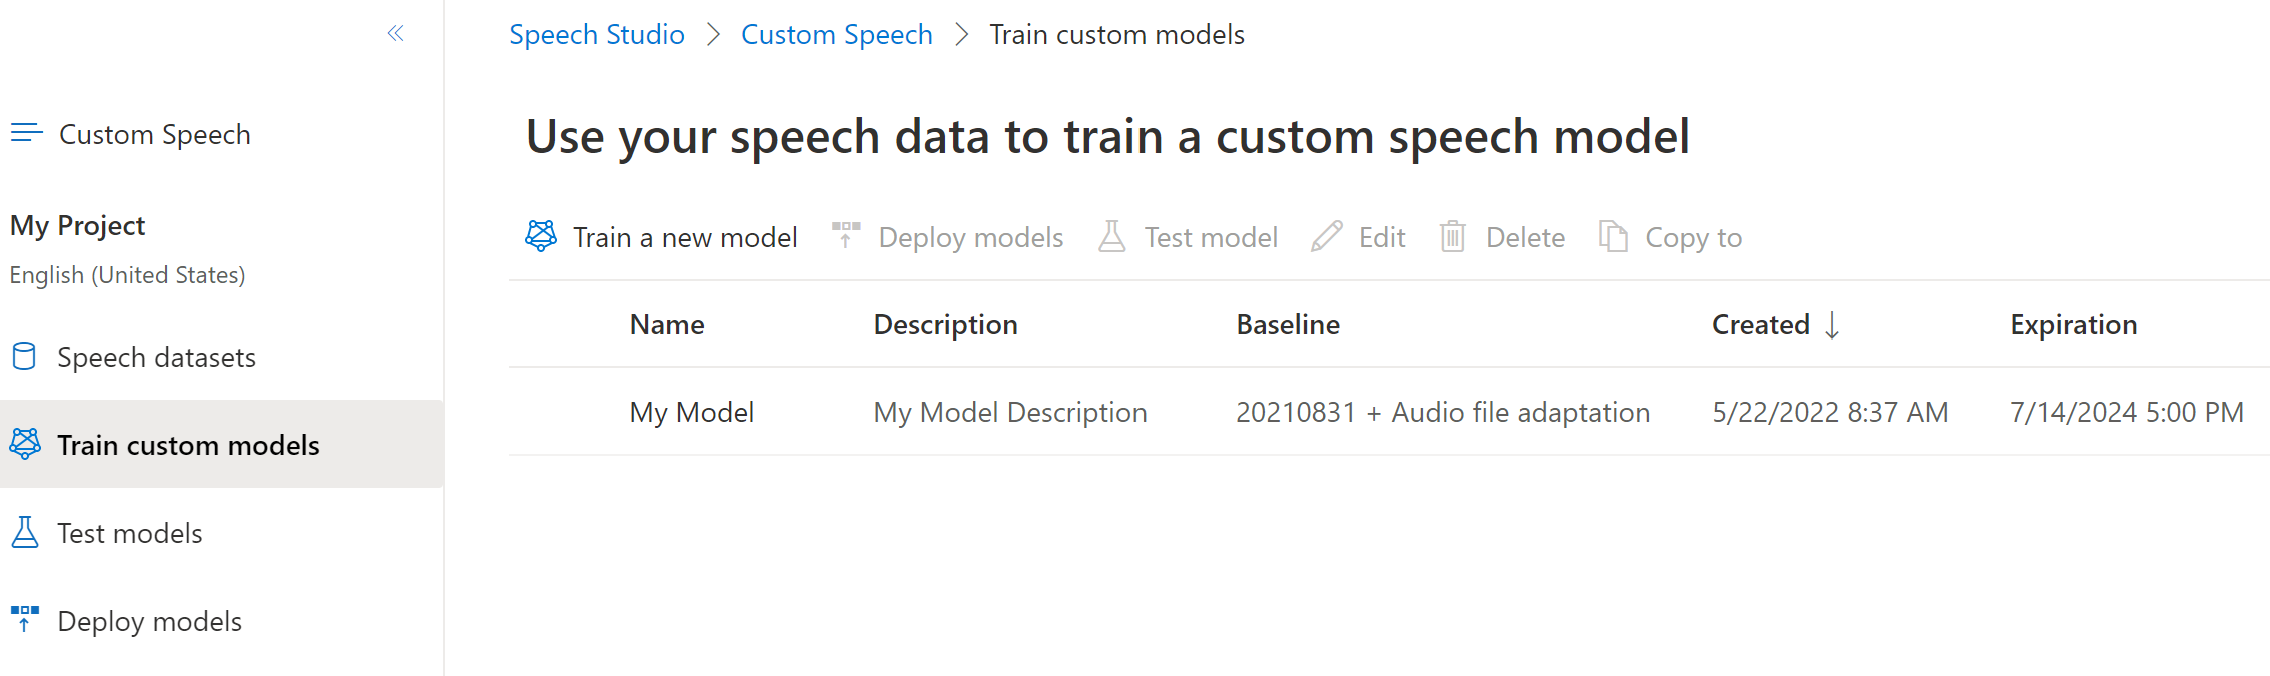 Captura de pantalla de la página de los modelos personalizados de entrenamientos en la que se muestra la fecha de expiración de la transcripción.